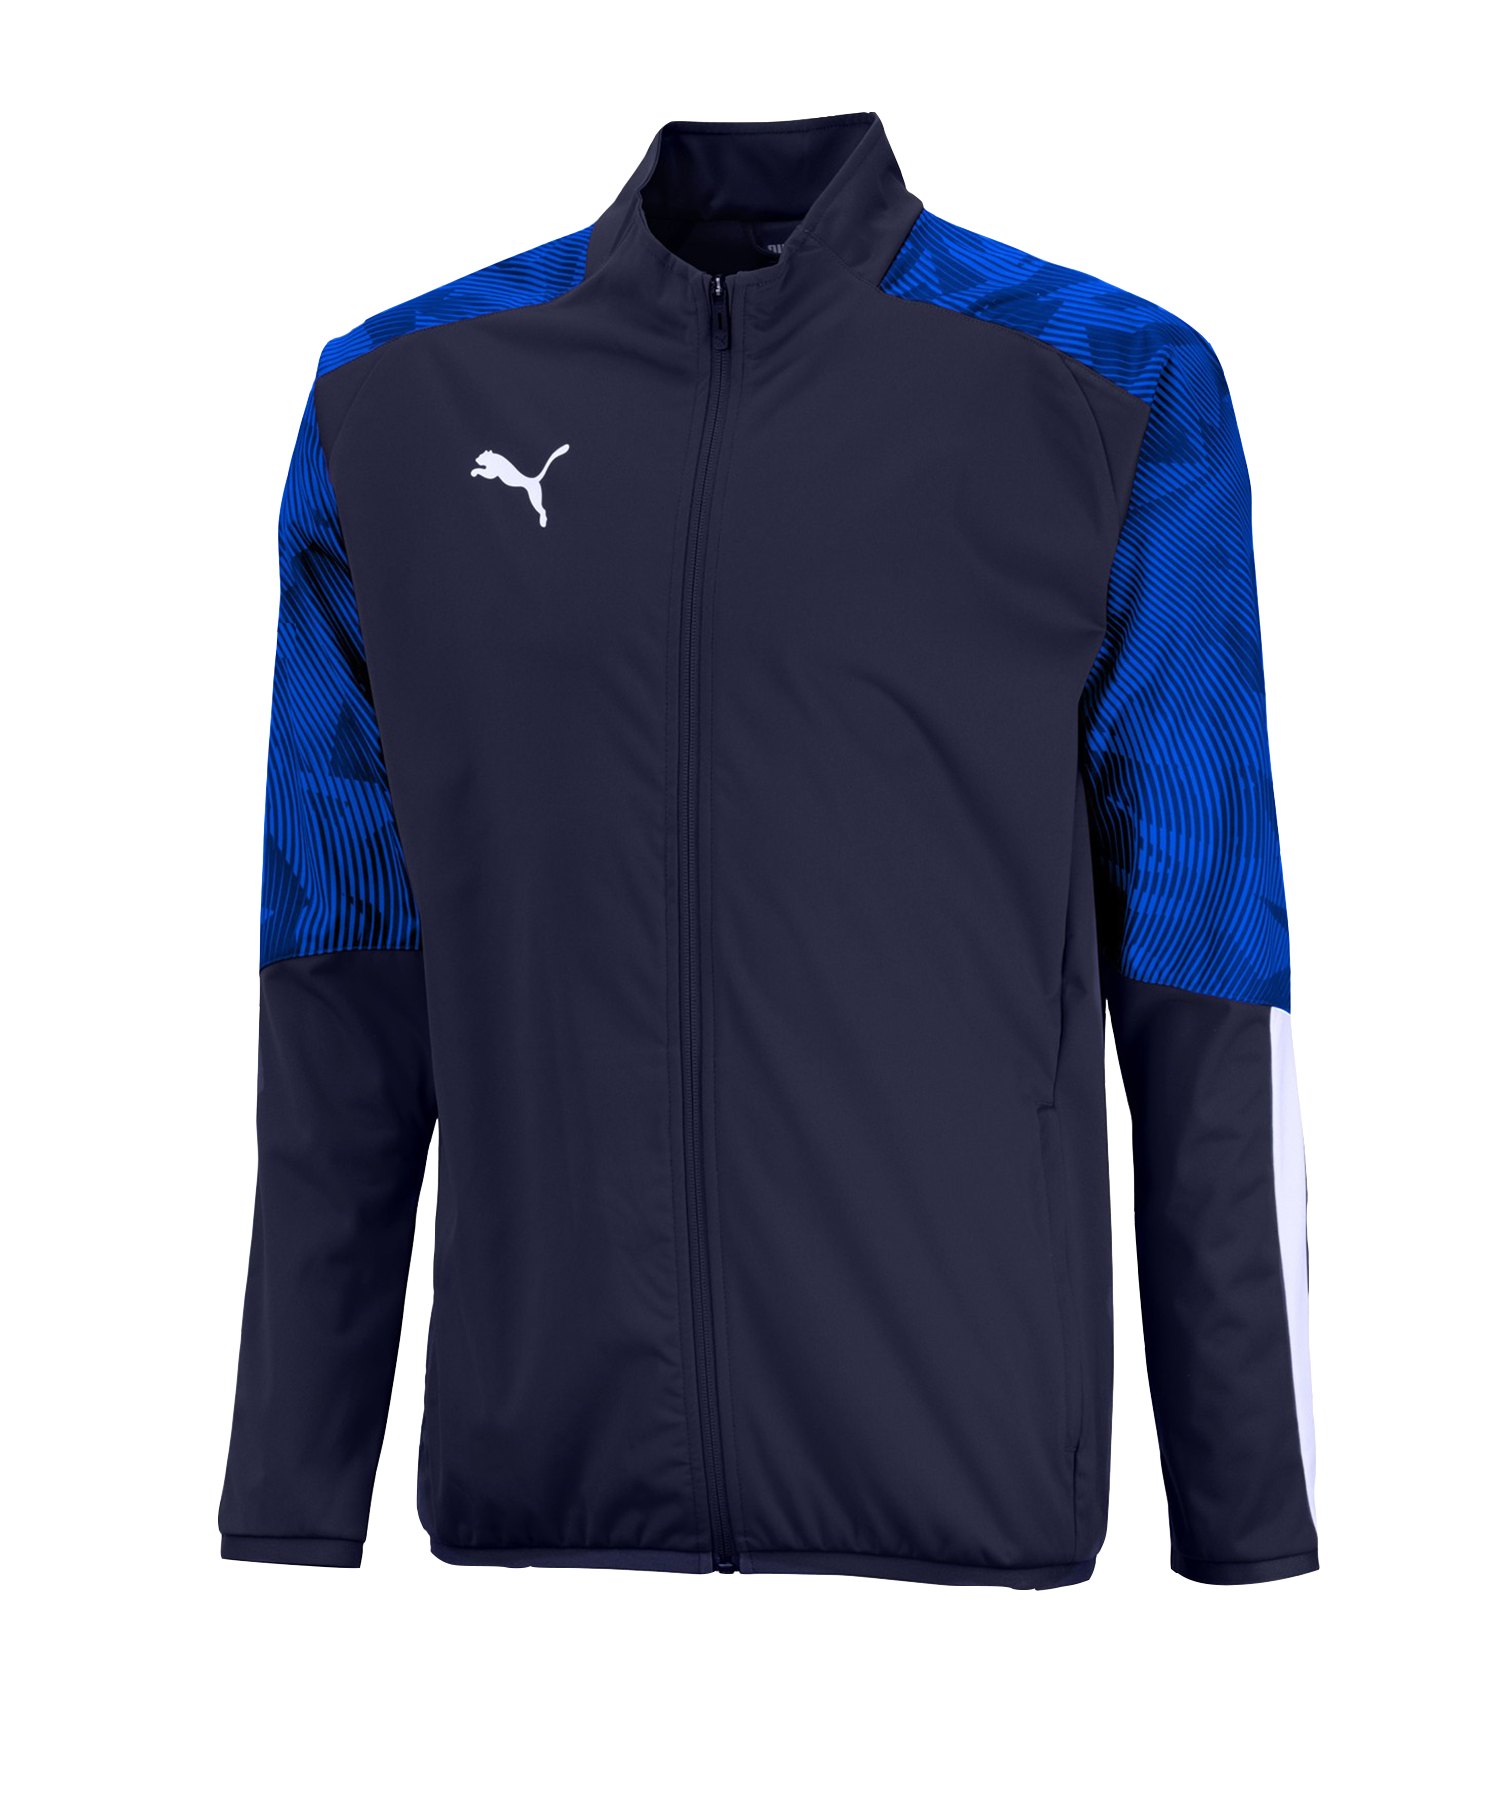 PUMA CUP Sideline Jacket Jacke Blau Weiss F02 - blau